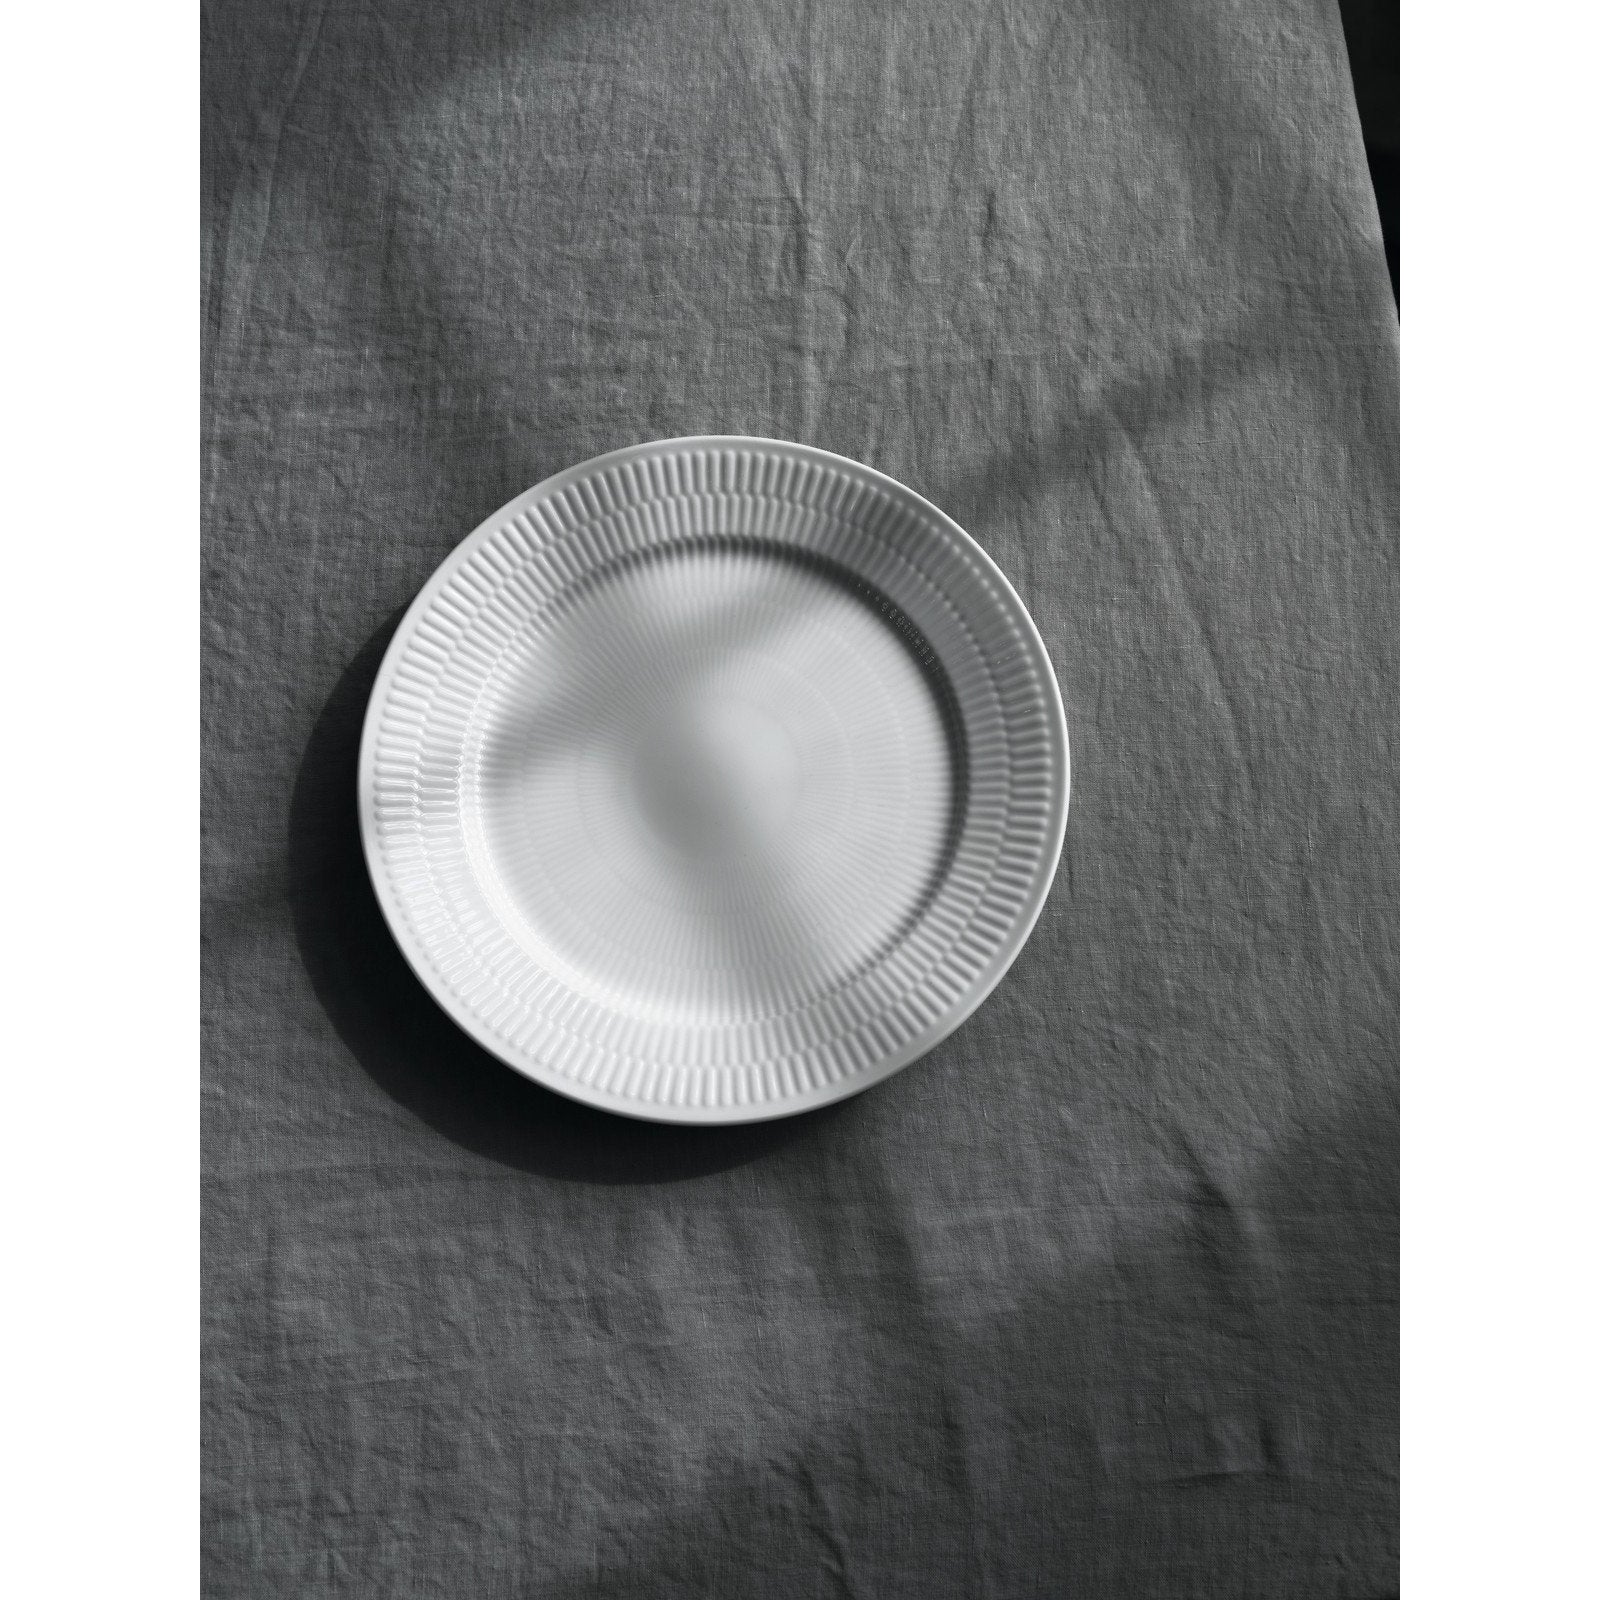 Royal Copenhagen White Fluled Plate, 27 cm